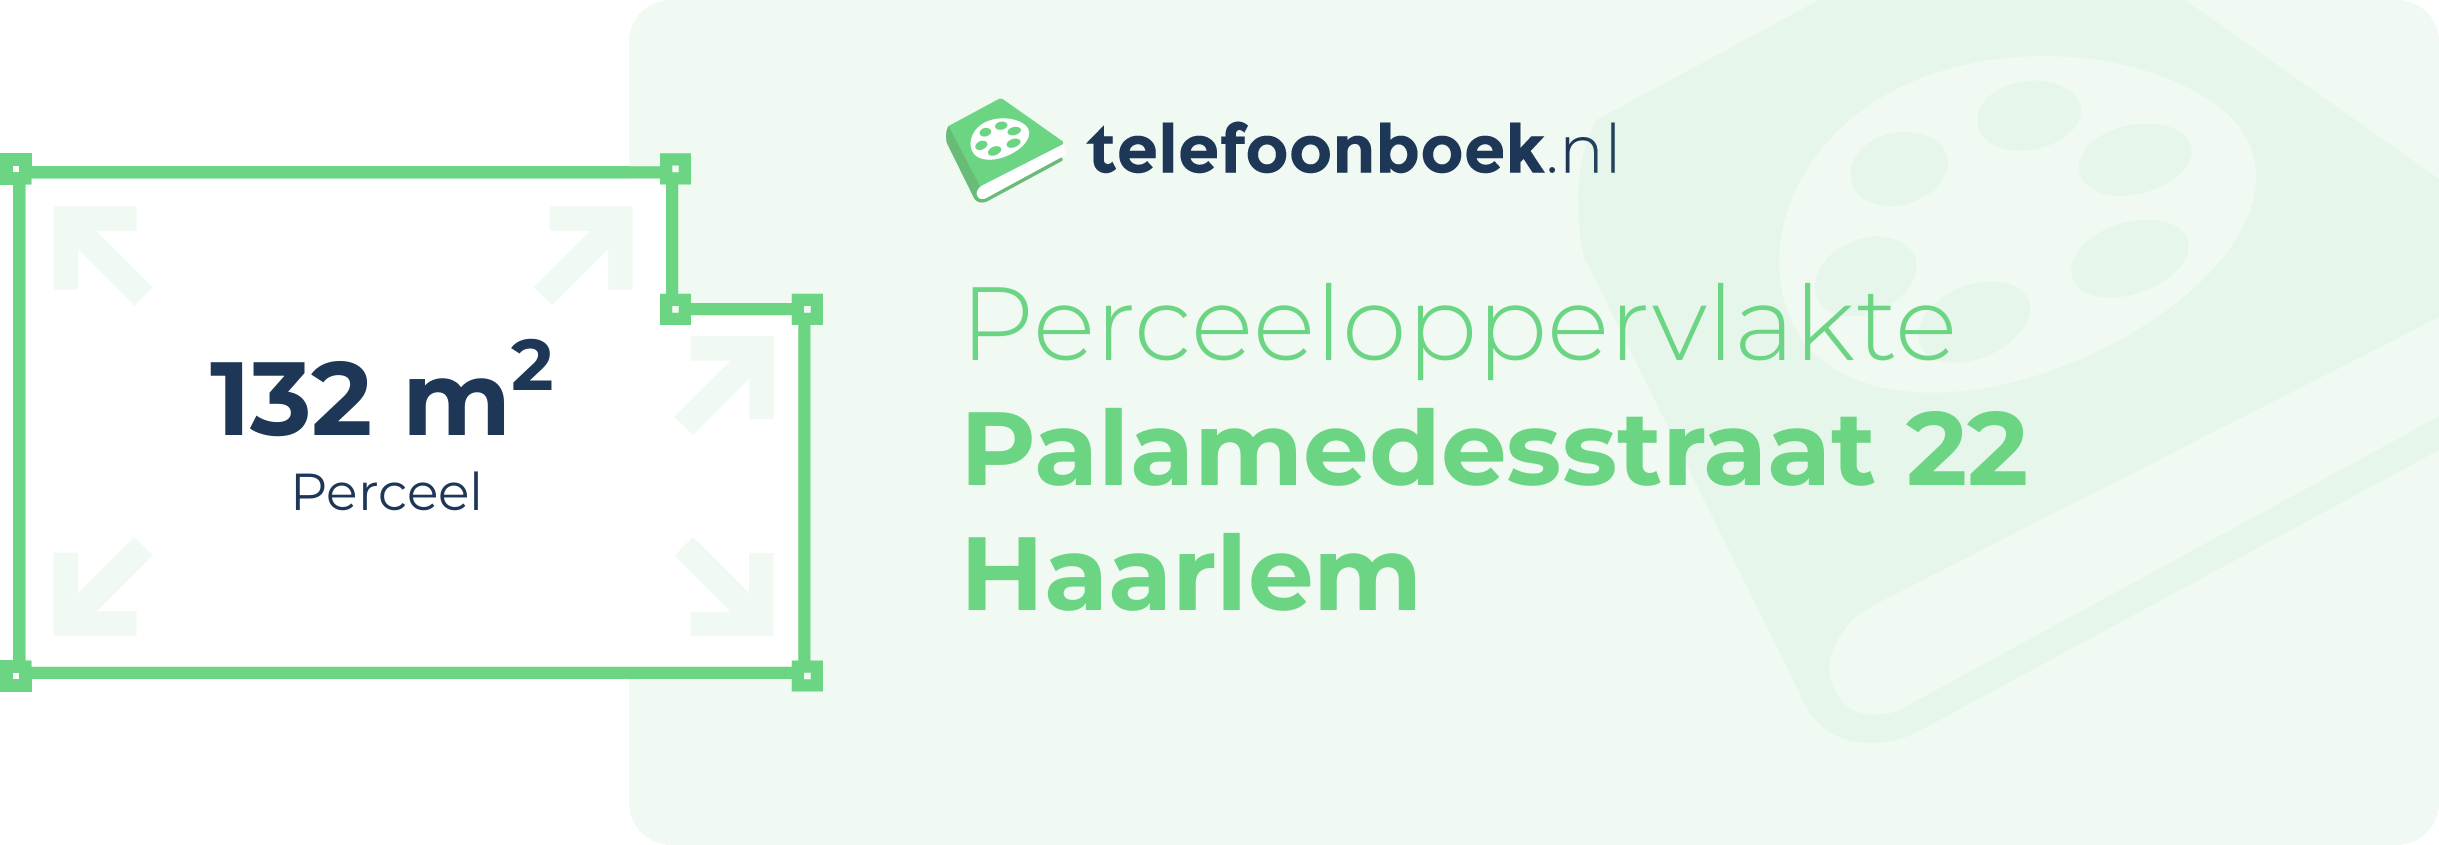 Perceeloppervlakte Palamedesstraat 22 Haarlem